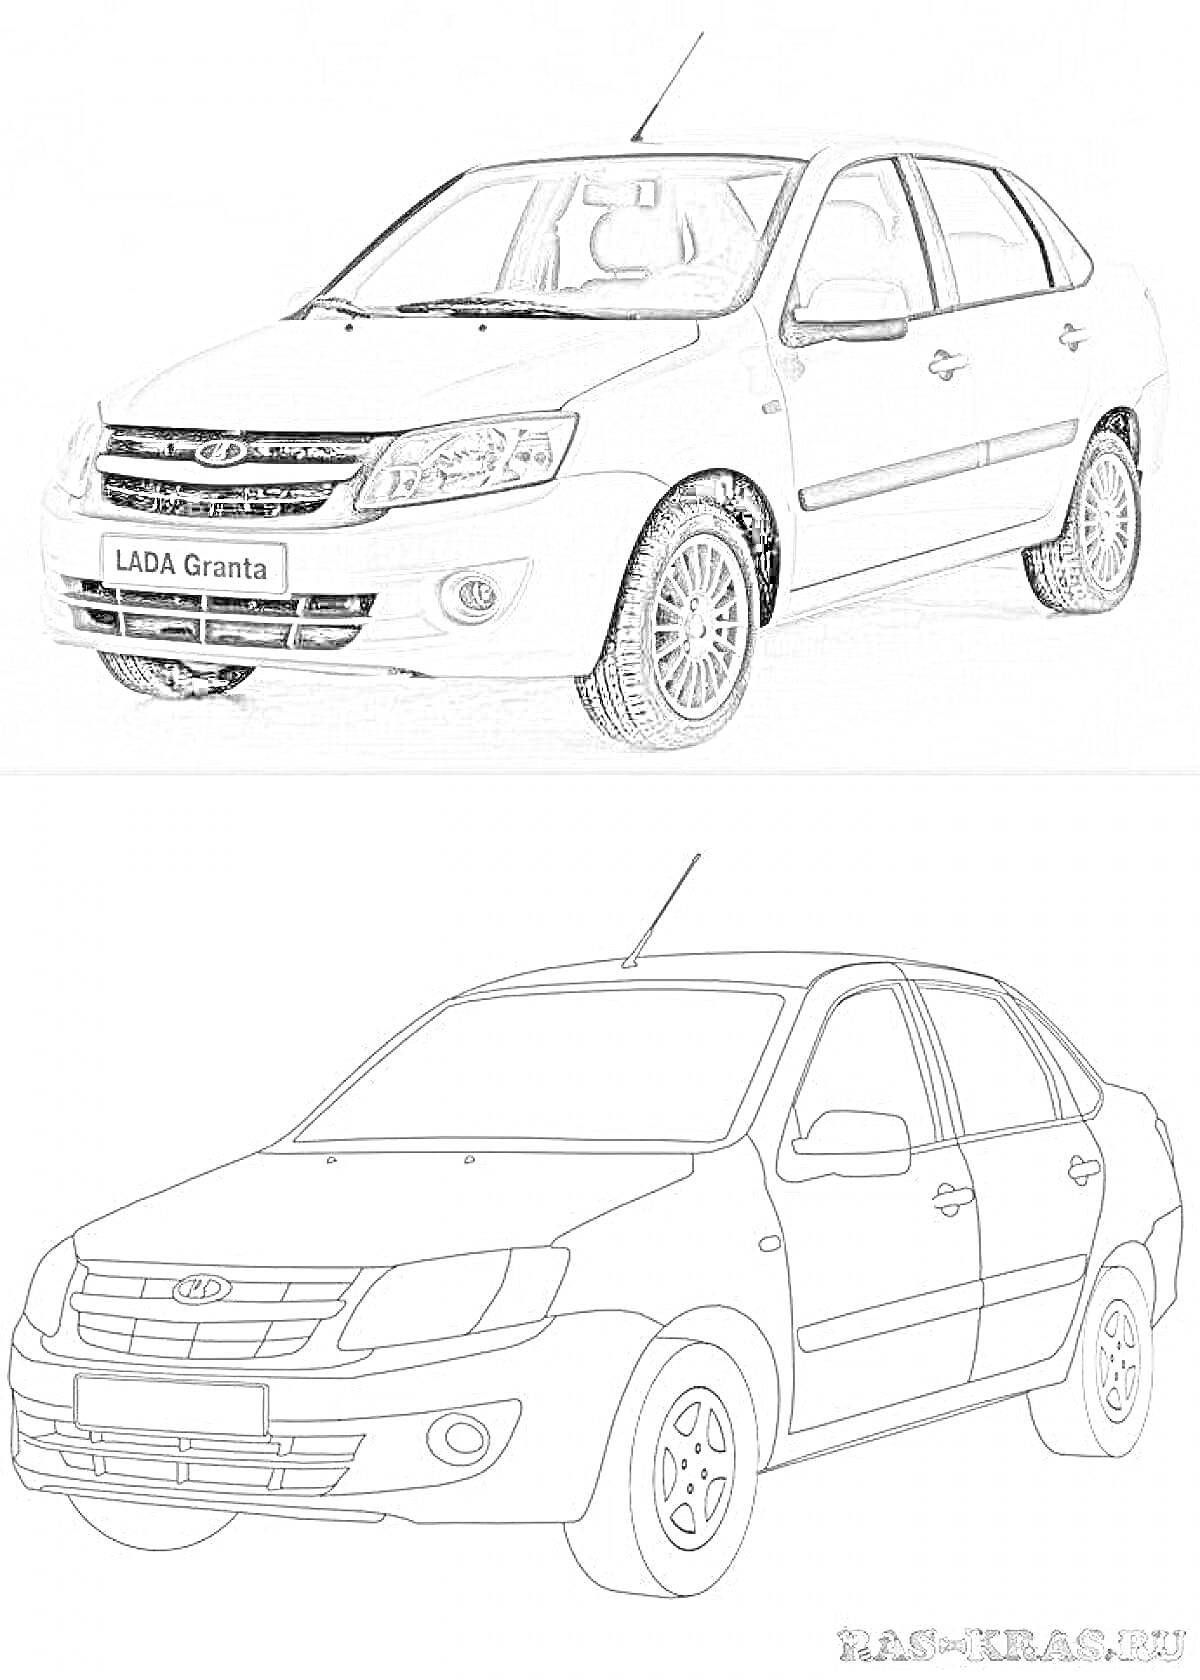 Раскраска LADA Granta - автомобиль, вид с переднего левого угла, вид спереди, переднее и заднее левое колесо, значок LADA, фара, почтовая ручка, боковое зеркало, радиаторная решетка.